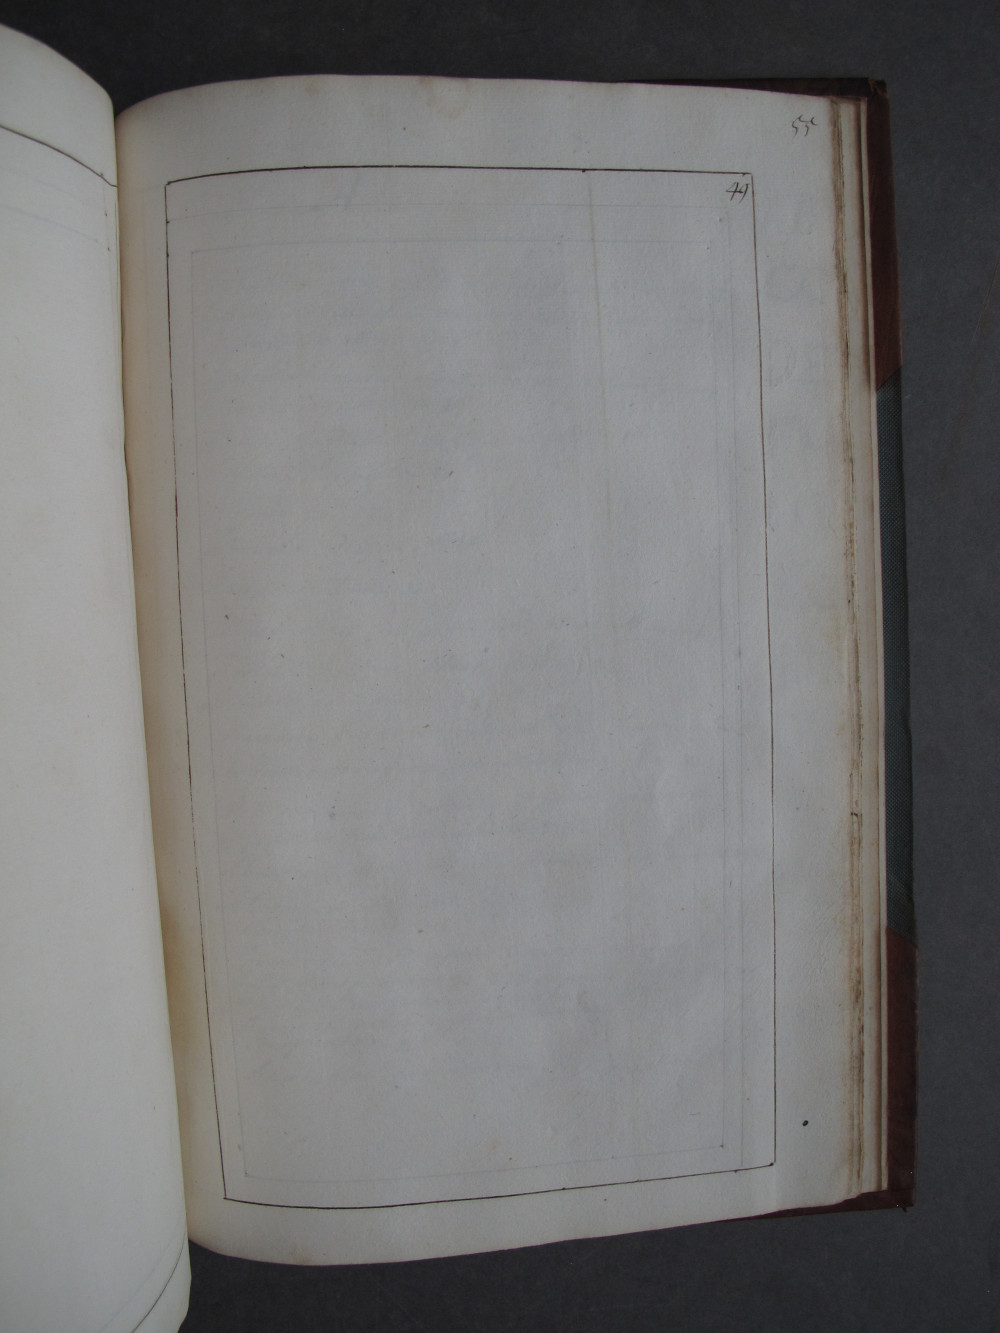 Folio 49 recto